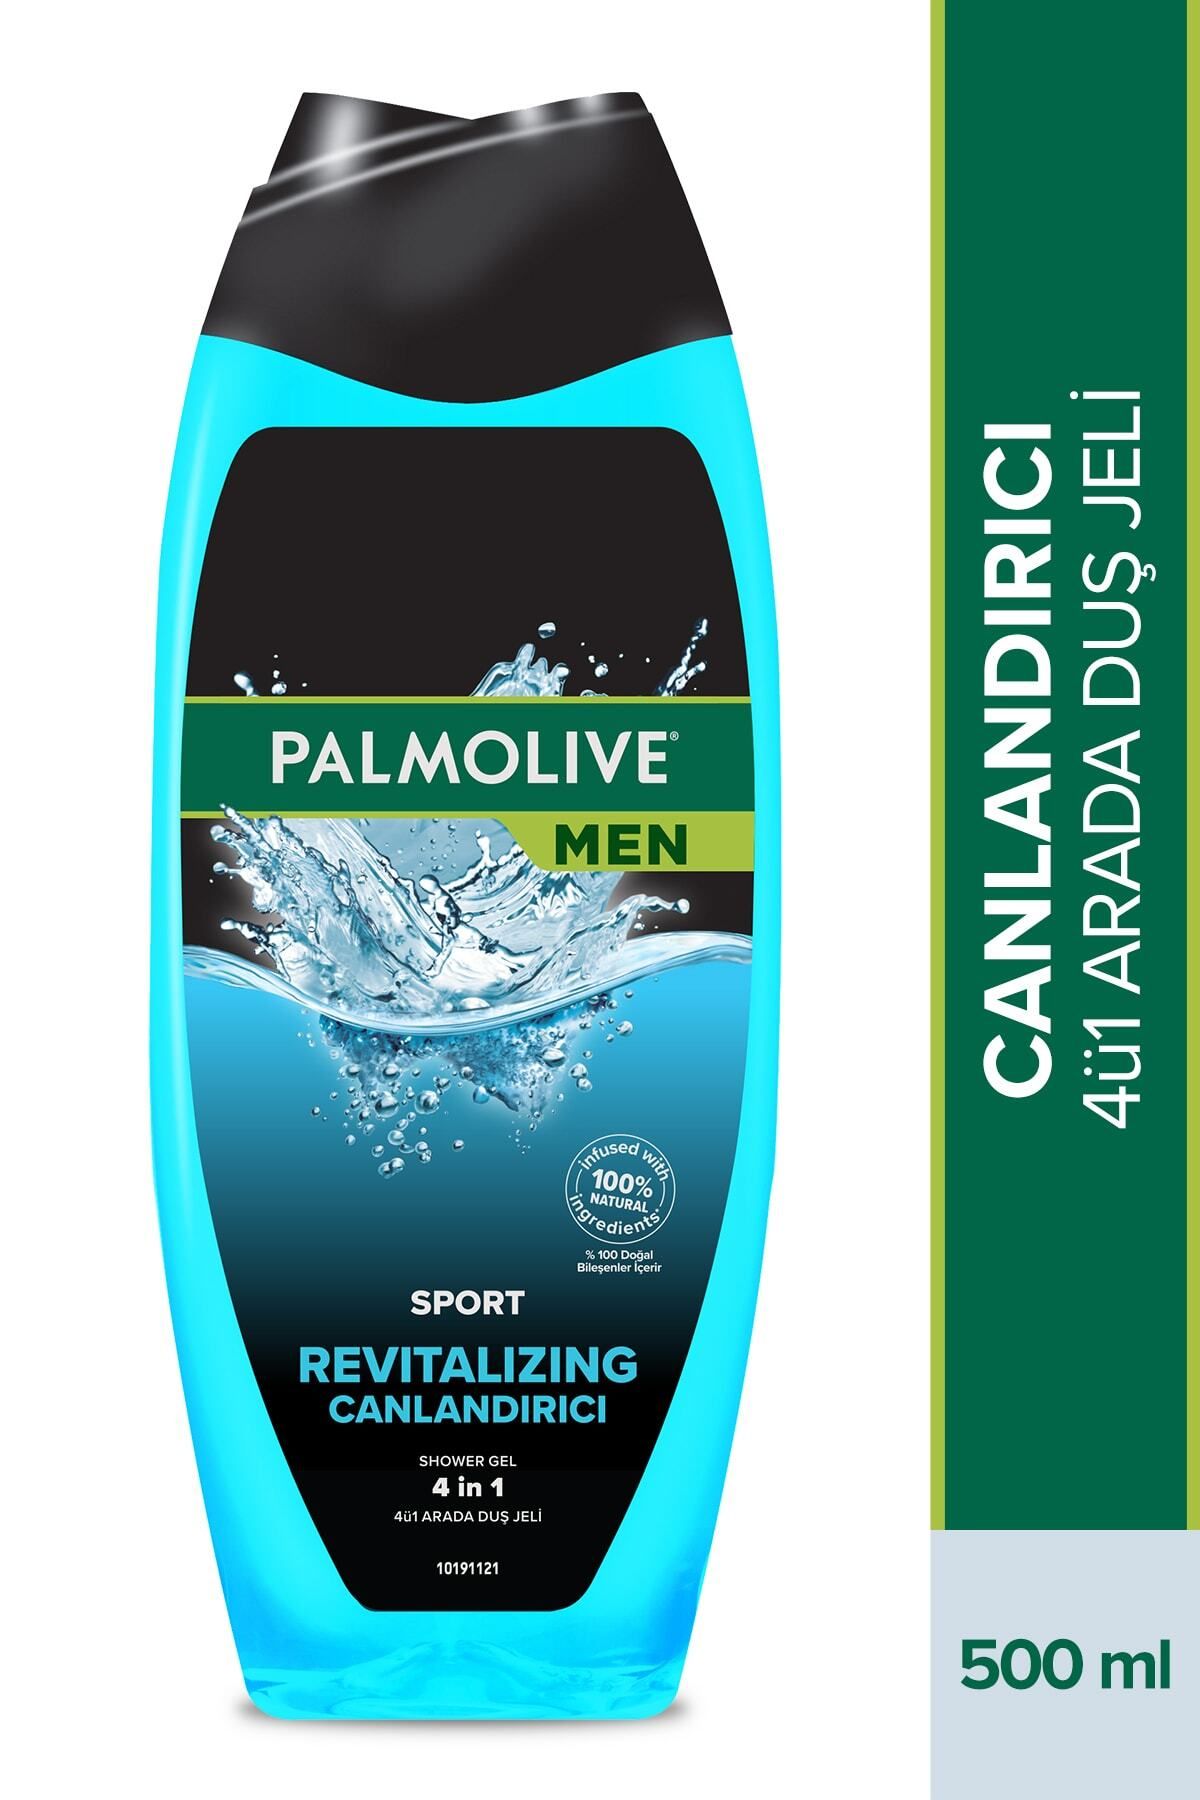 Palmolive Men Sport Canlandırıcı 4'ü 1 Arada Yüz,vücut Ve Saç Için Erkek Duş Jeli Ve Şampuan 500 ml